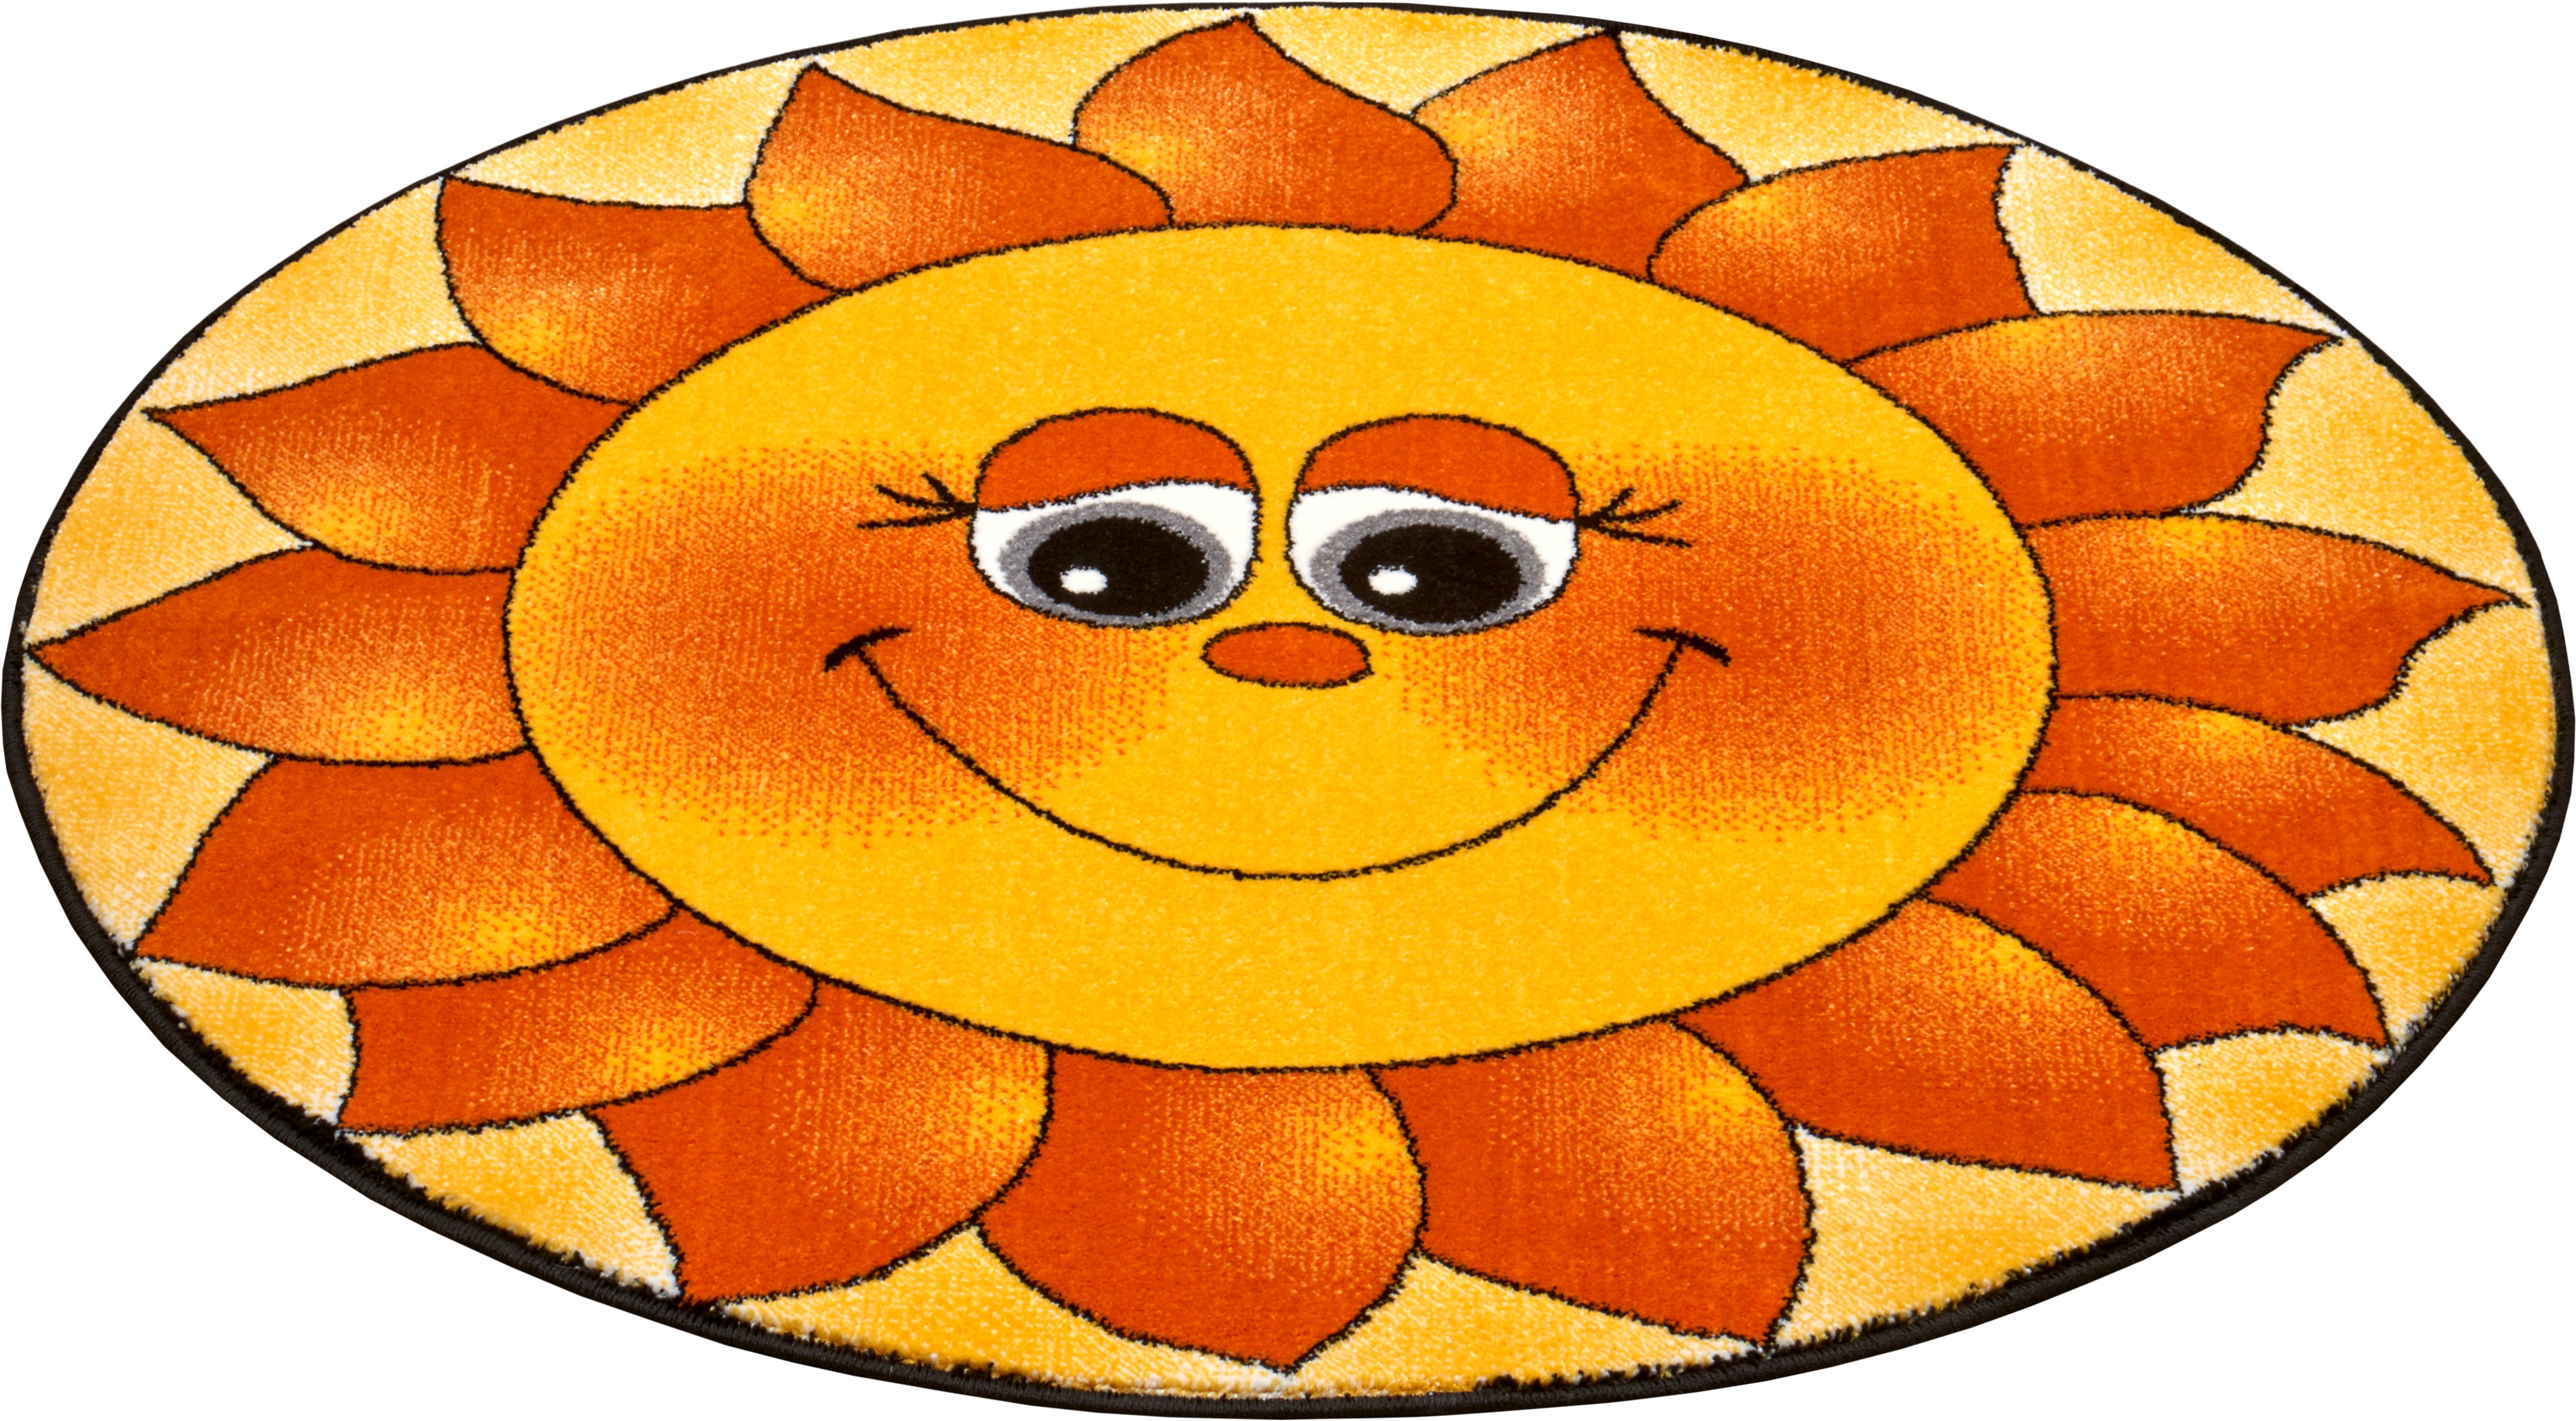 Rond kindervloerkleed zon - geel/oranje 80 cm rond